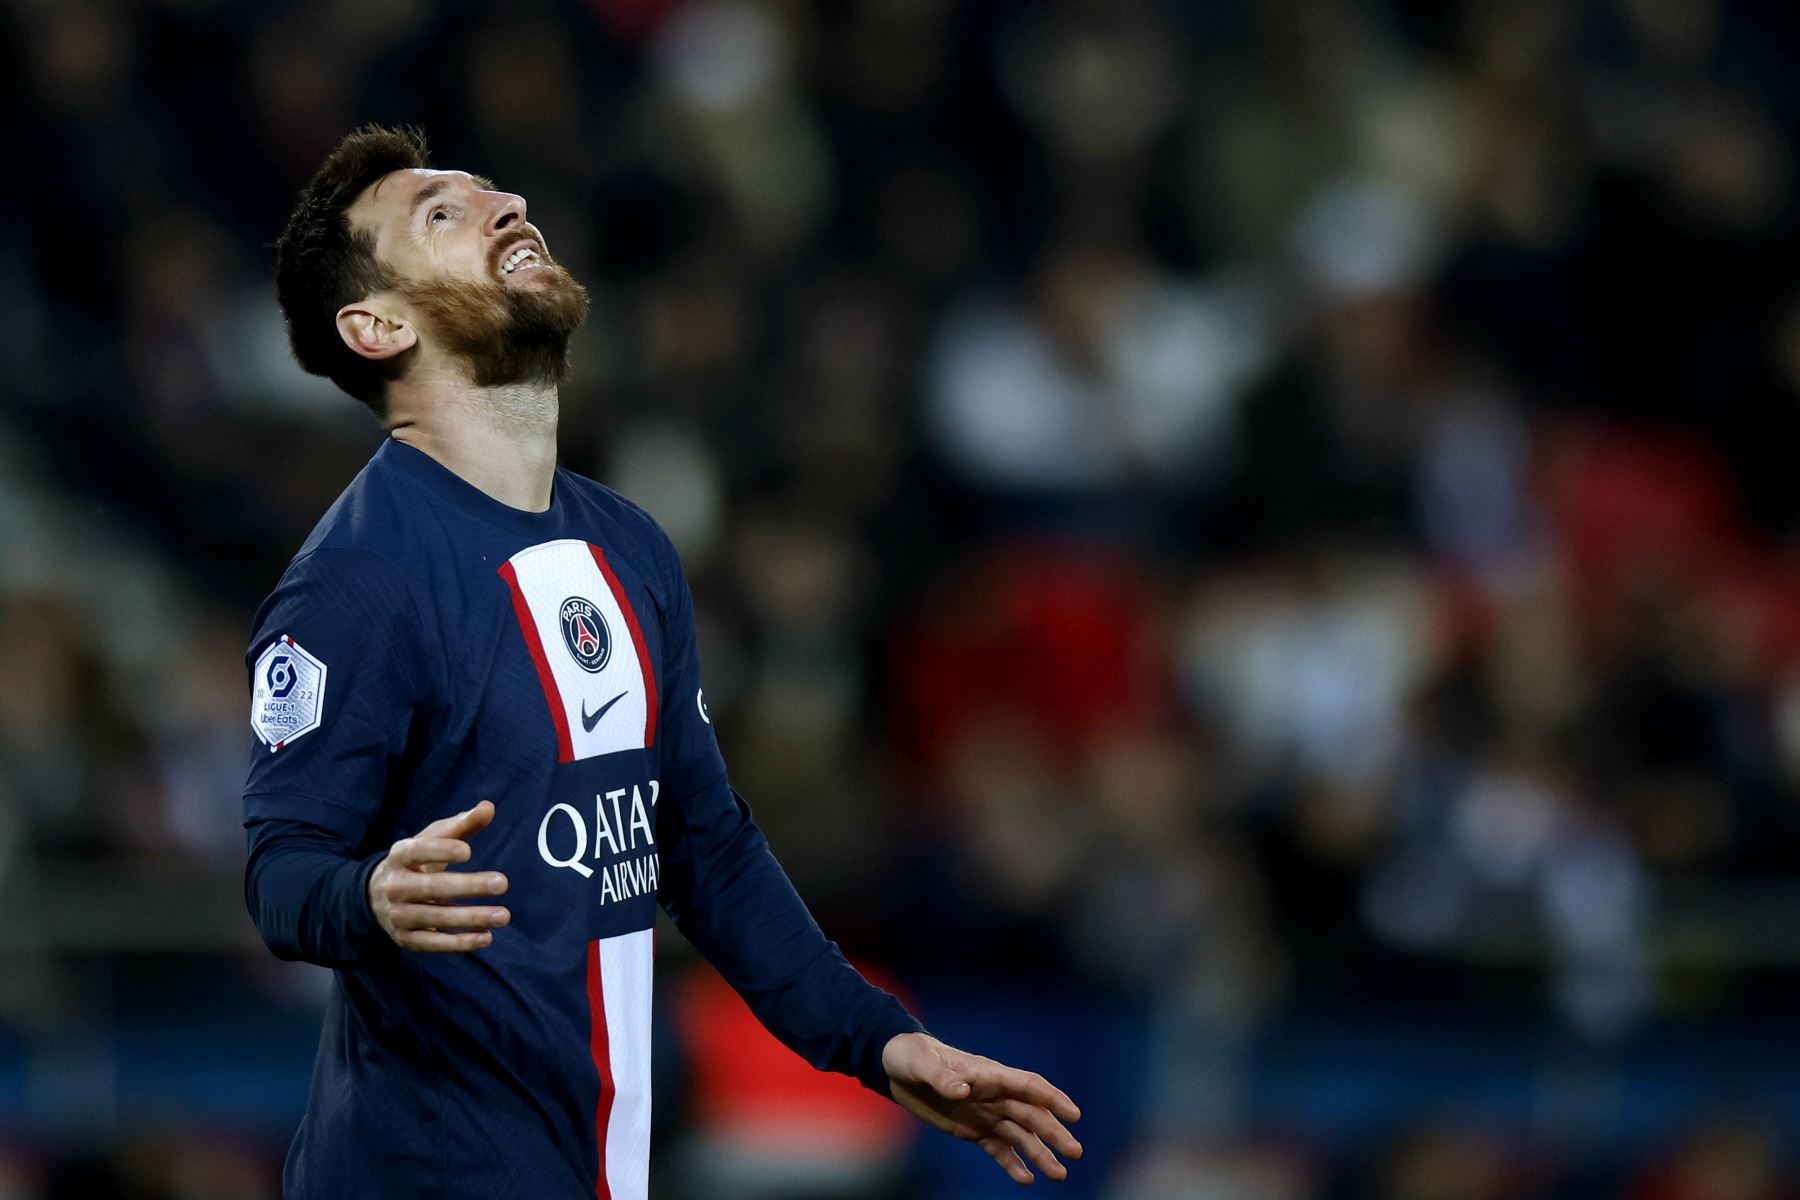 Lionel Messi del Paris Saint Germain reacciona durante el partido de fútbol de la Ligue 1 francesa entre el PSG y el Toulouse FC en el estadio Parc des Princes de París, Francia.
Foto: EFE